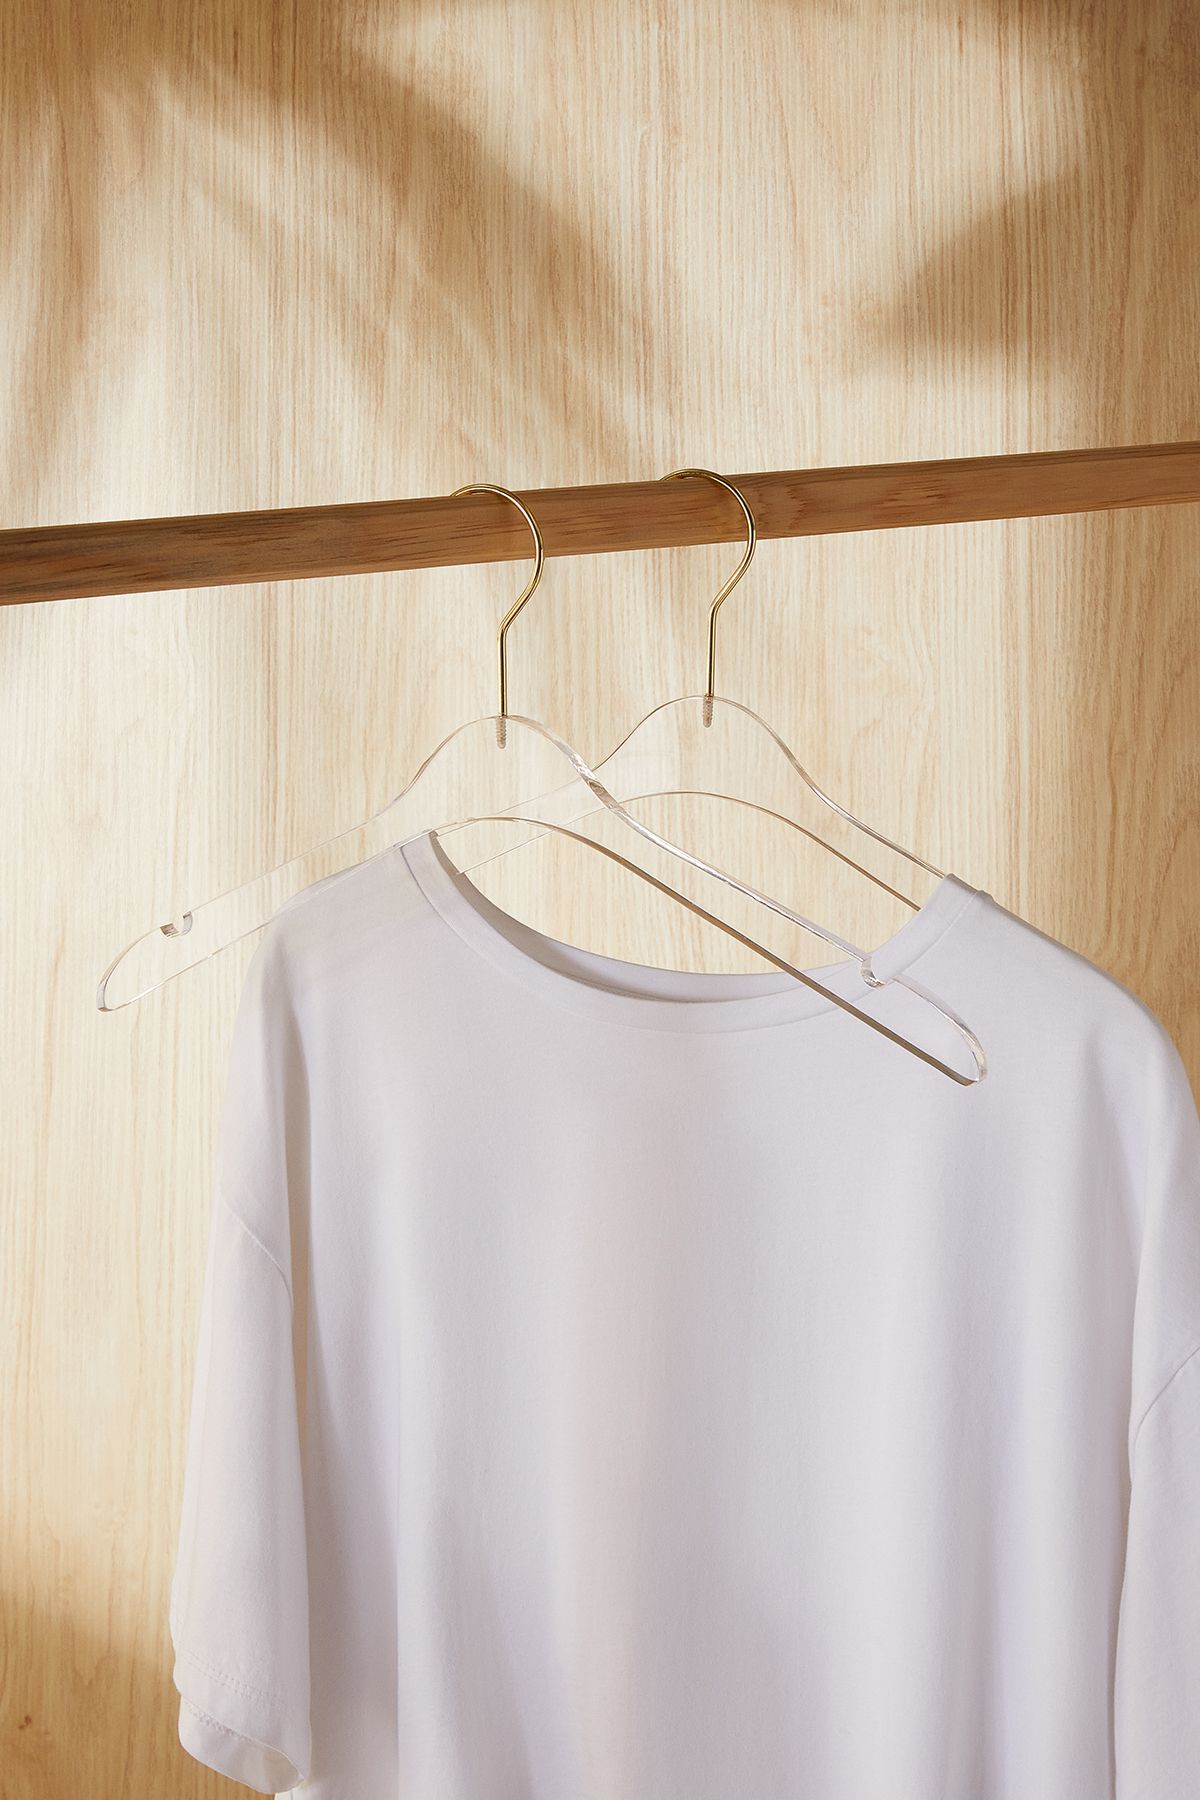 Ocean Home Textile 2 Adet Şeffaf Akrilik Askı, Elbise Kıyafet Askısı, Giysi Askısı